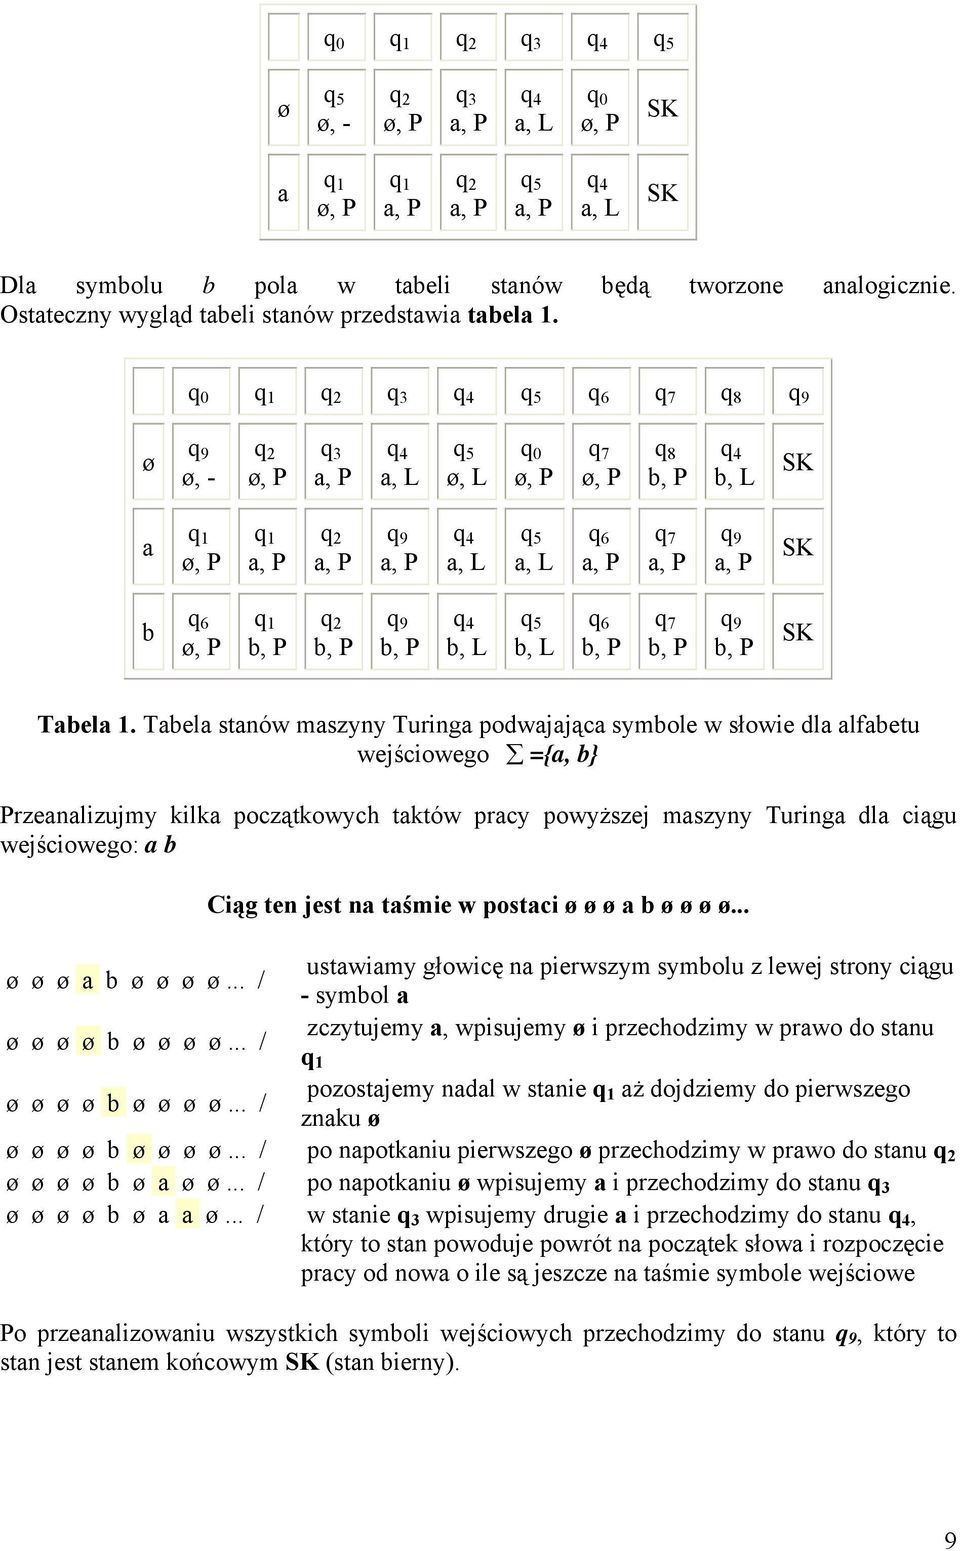 Tabela stanów maszyny Turinga podwajająca symbole w słowie dla alfabetu wejściowego ={a, b} Przeanalizujmy kilka początkowych taktów pracy powyższej maszyny Turinga dla ciągu wejściowego: a b ø ø ø a